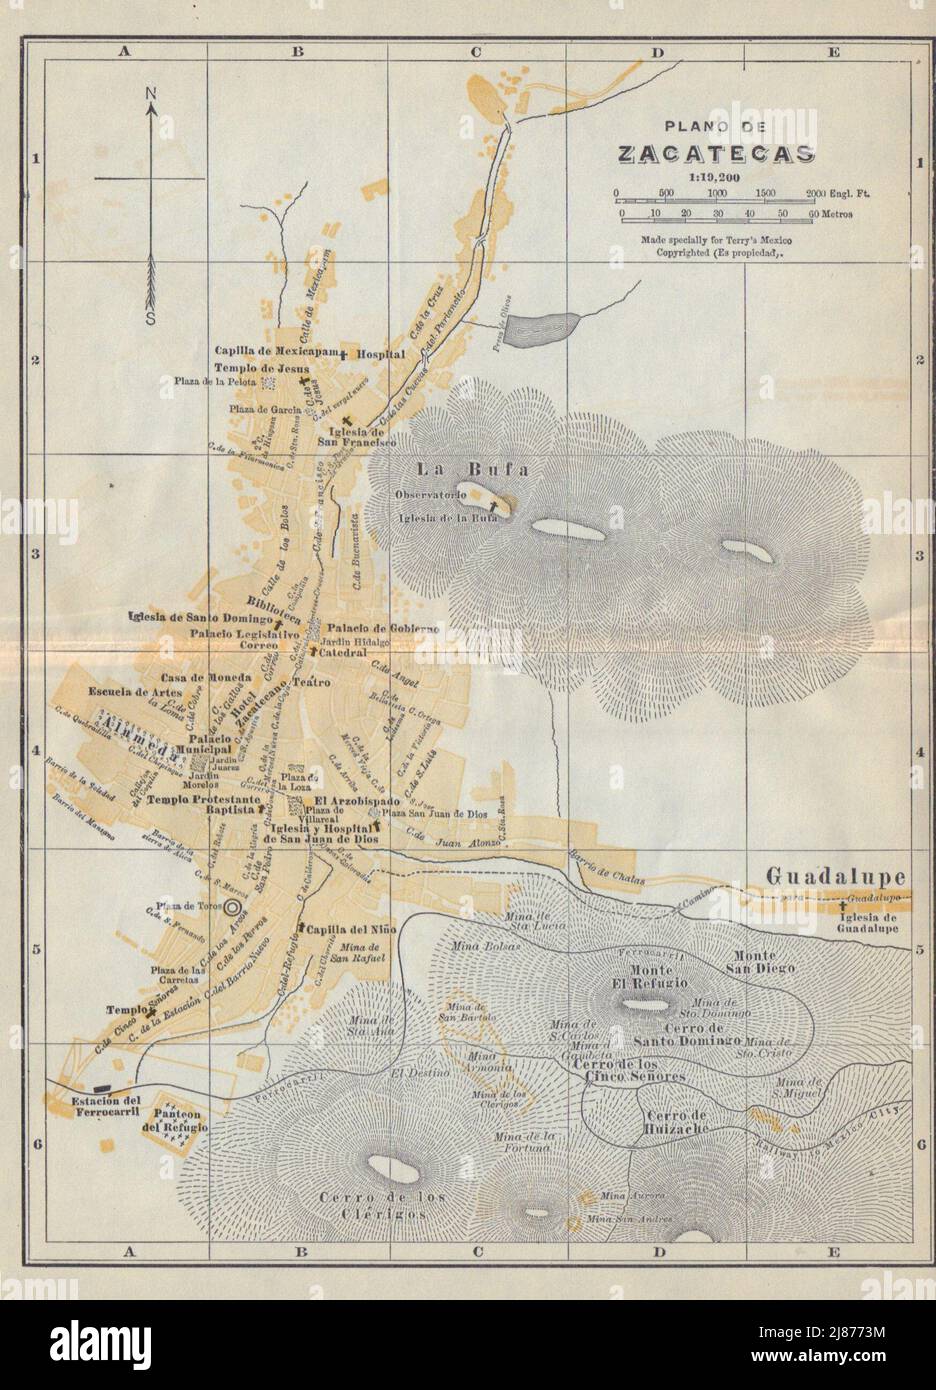 Plano de ZACATECAS, Mexico. Mapa de la ciudad. City/town plan 1938 old Stock Photo